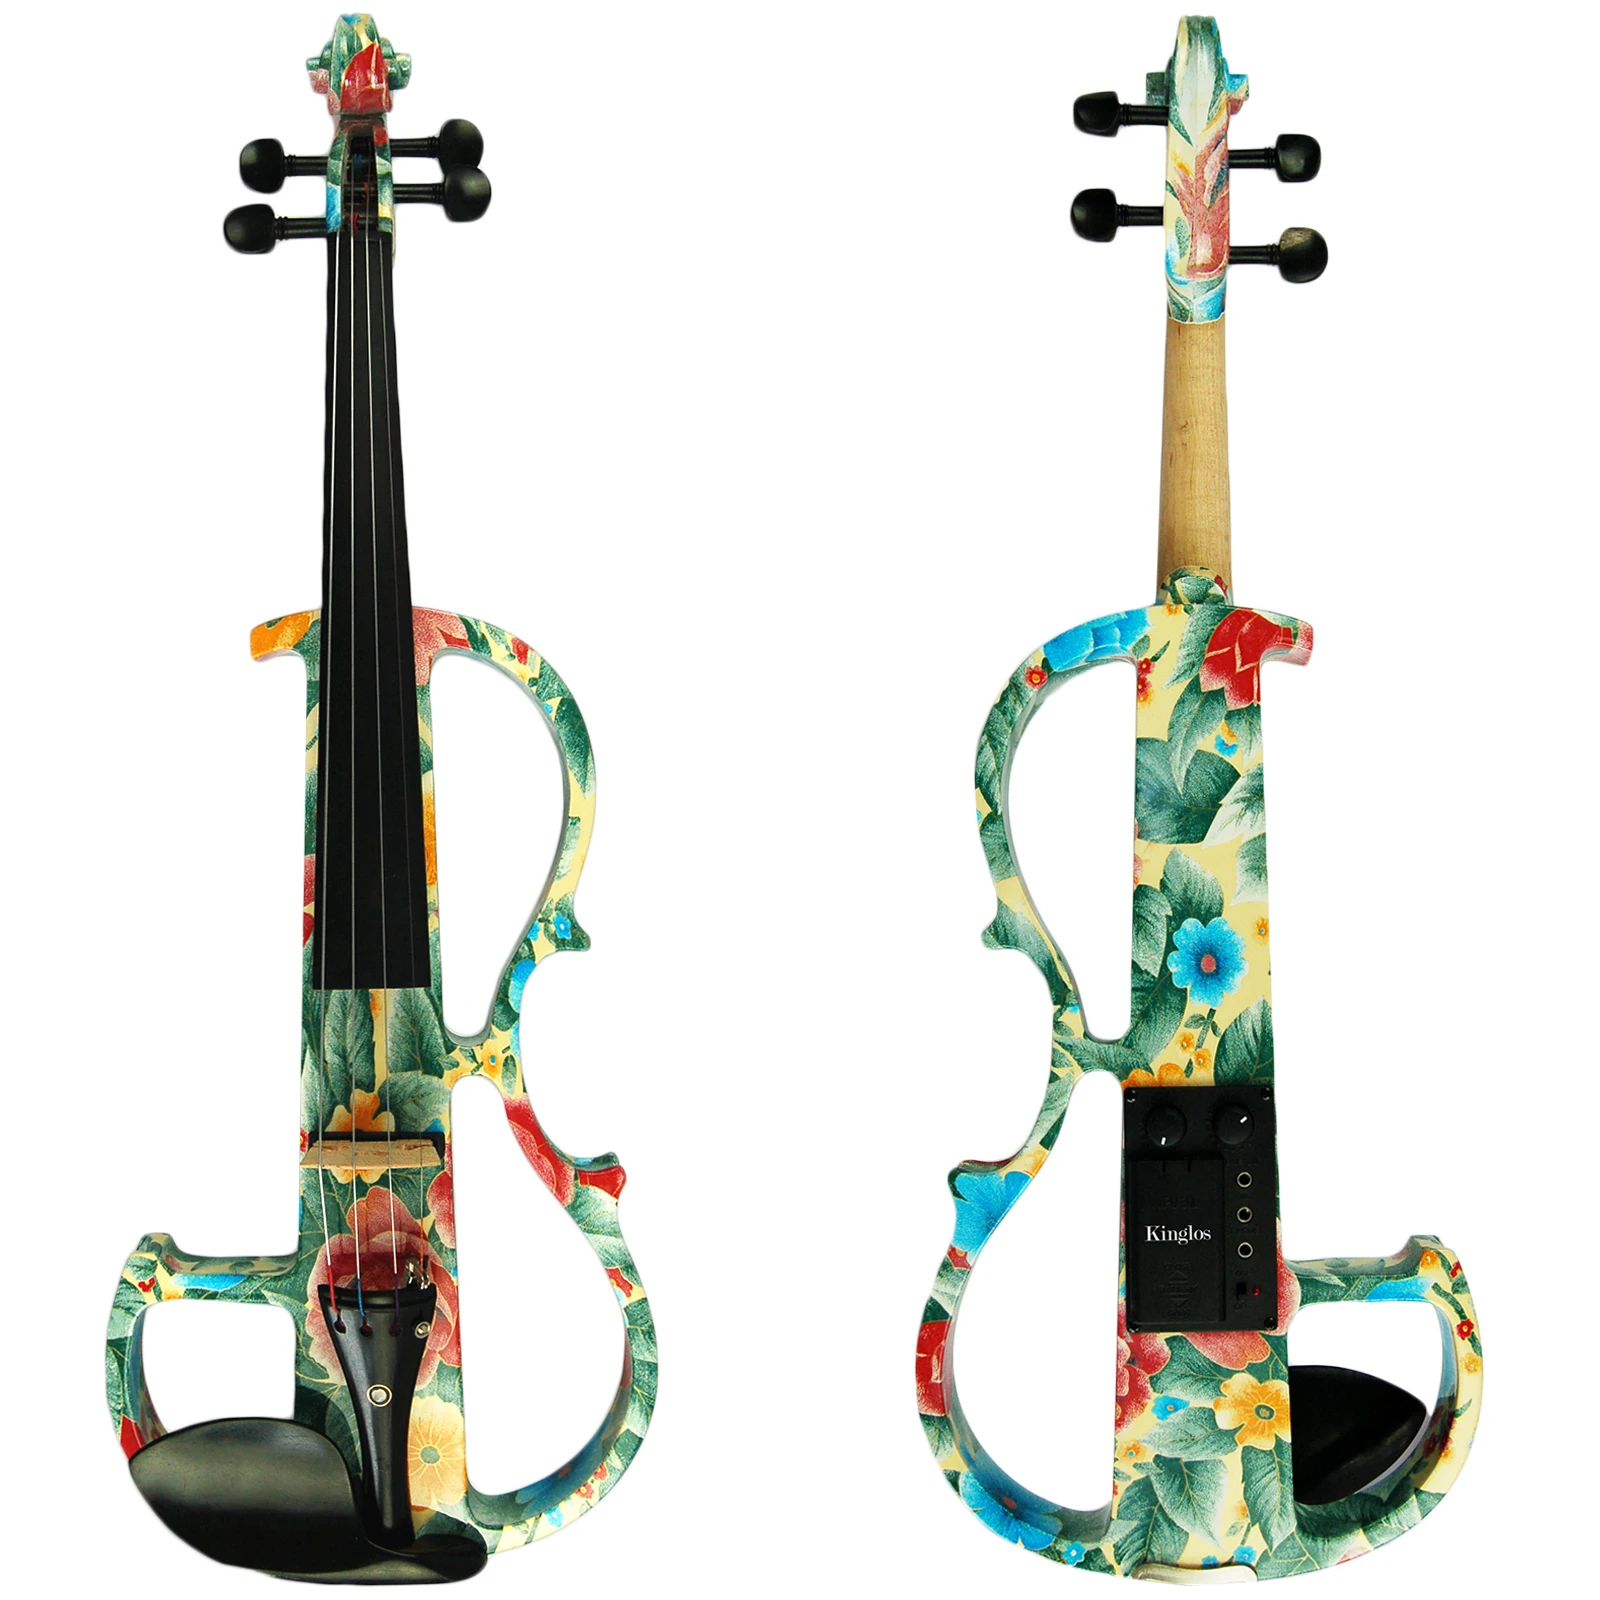 Kinglos полный размер 4/4 цветная твердая древесина Расширенный электрический/Тихая скрипка комплект с эбеновым фитингом